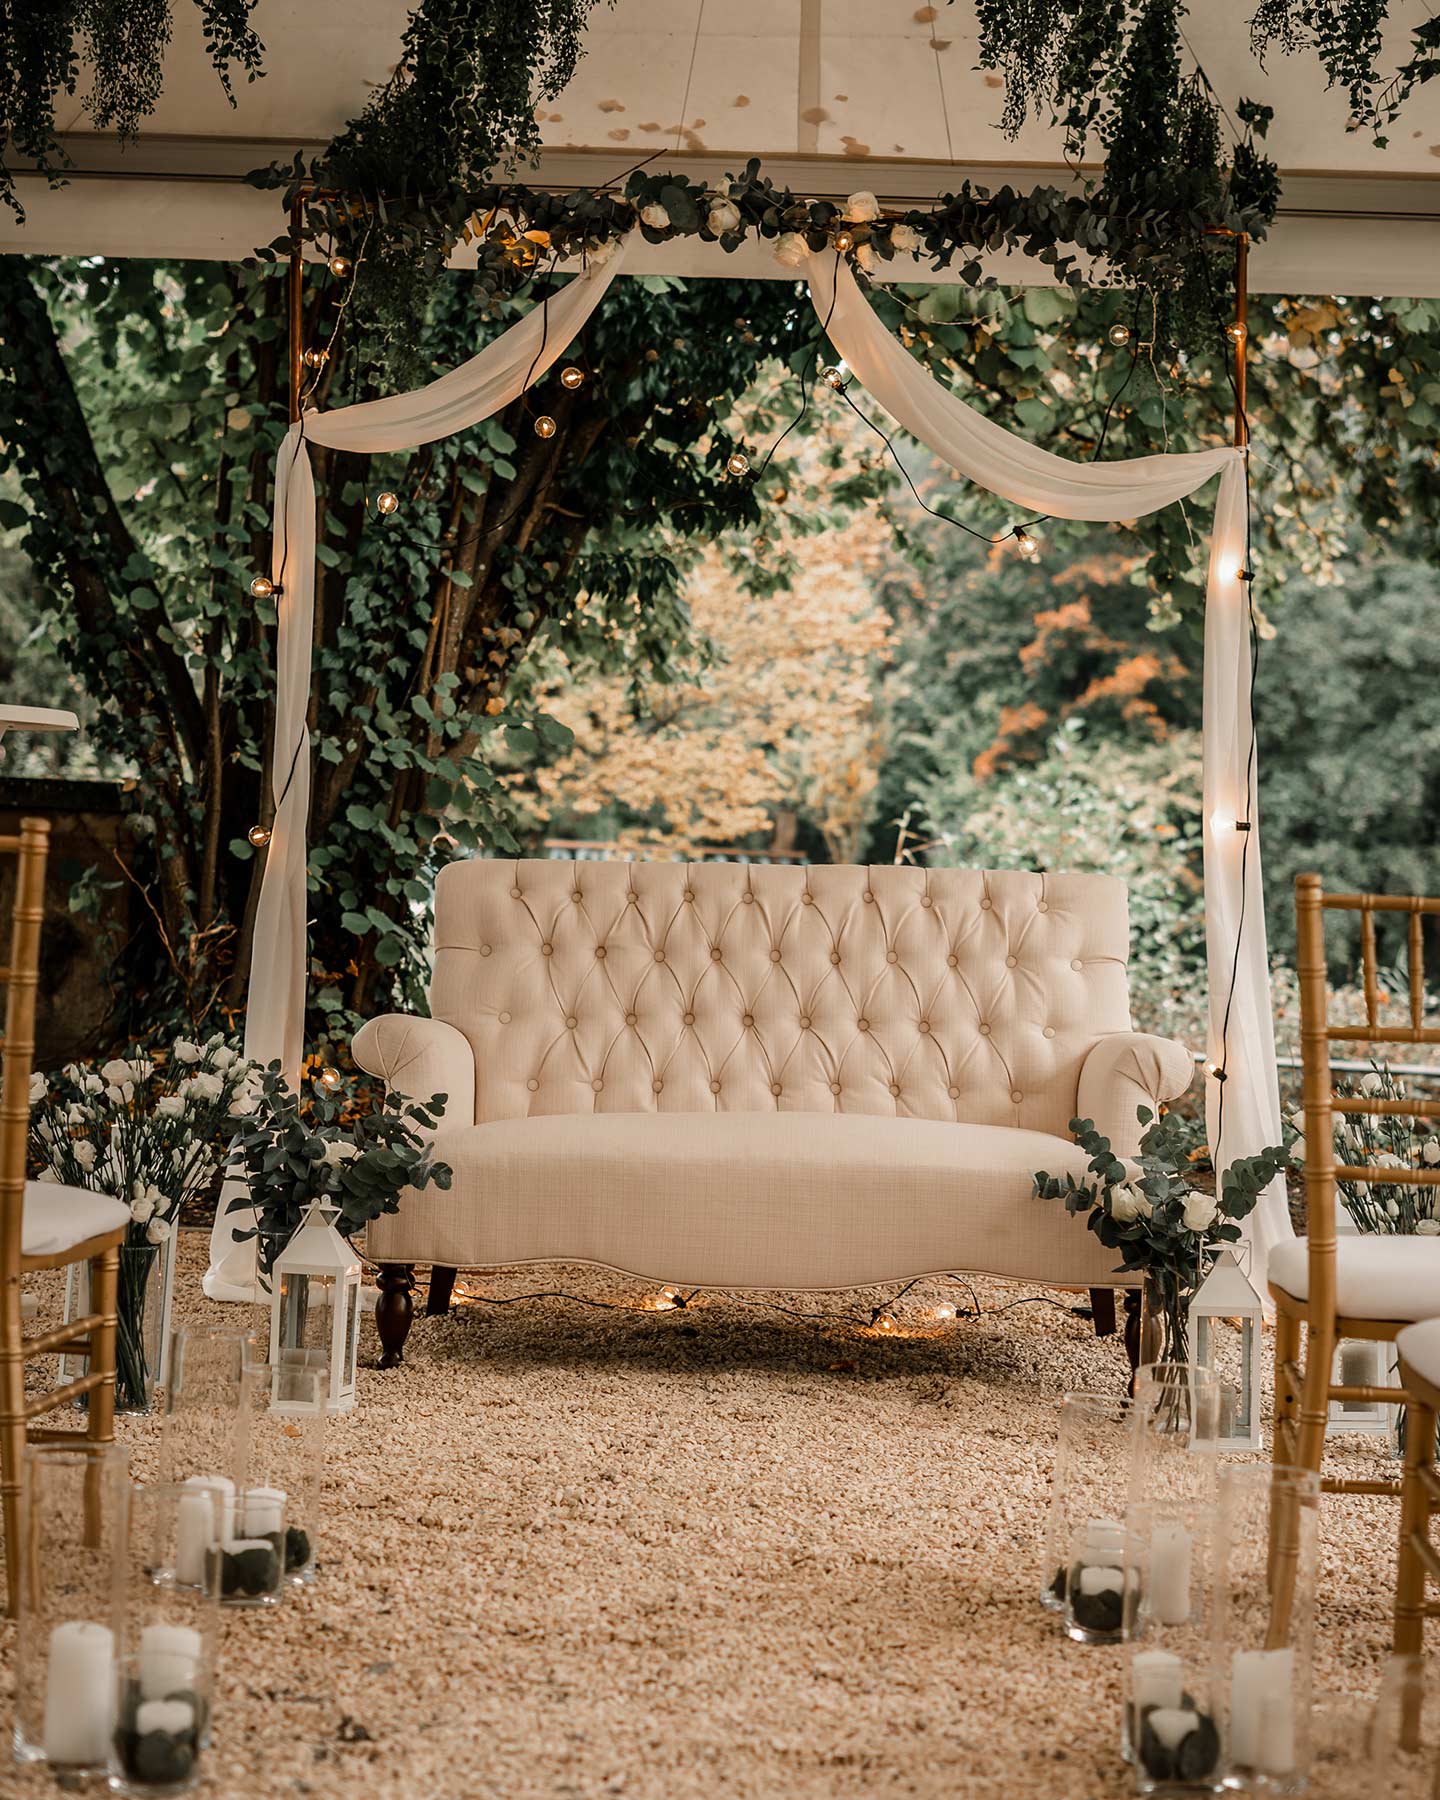  Unter einem weißen Pavillon überdacht steht ein cremefarbenes Sofa für das Hochzeitspaar zur Trauung bereit. Der Traubogen in Gold wird von einer Girlande aus weißem, dünnen Stoff, einer Lichterkette und einer grünen Pflanzenranke verziert. 